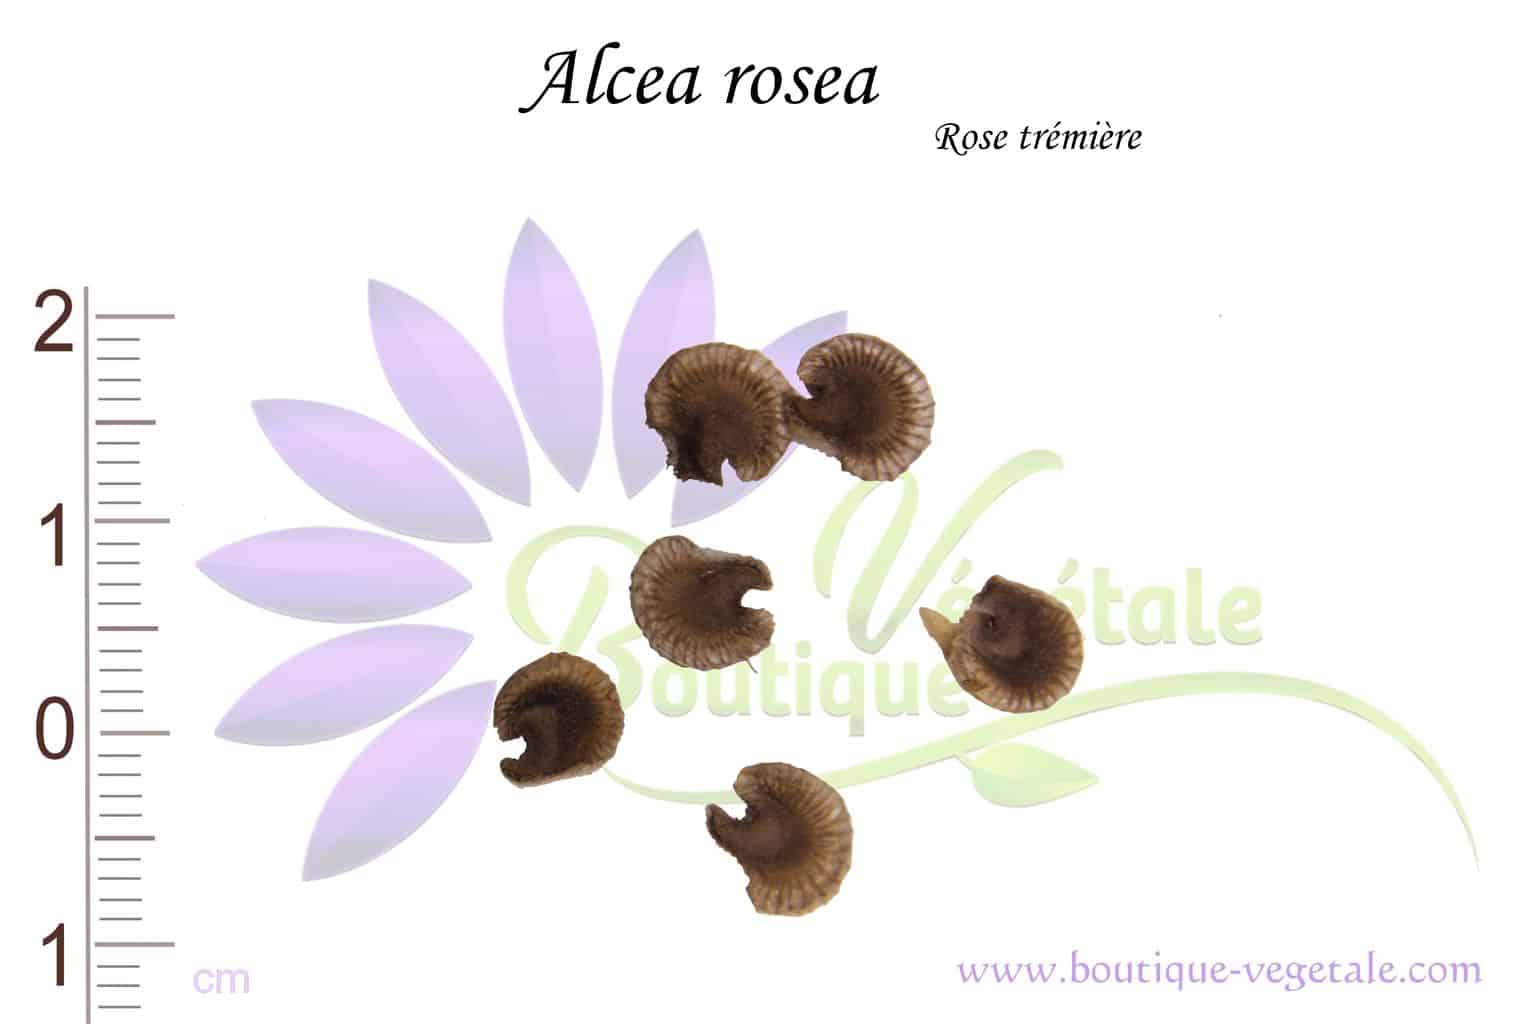 Graines d'Alcea rosea, Alcea rosea seeds